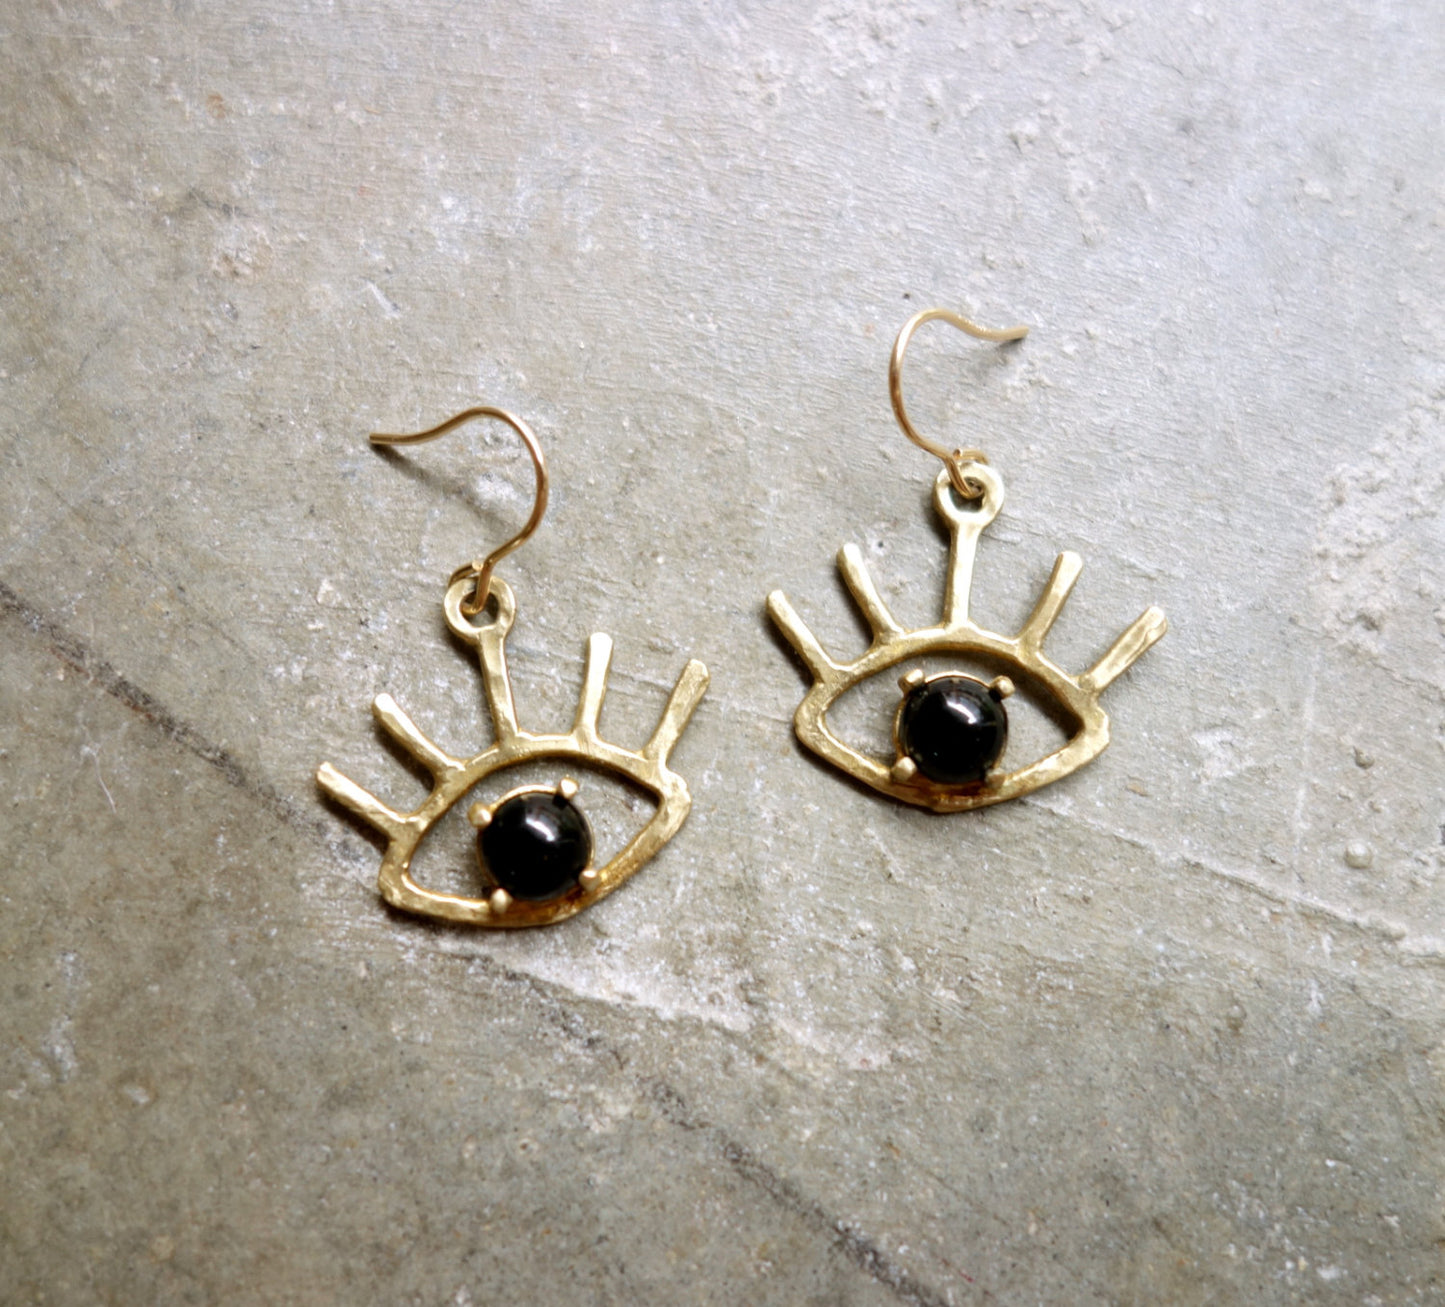 Beholder Earrings: Brass and Black Onyx Eye Dangle Earrings